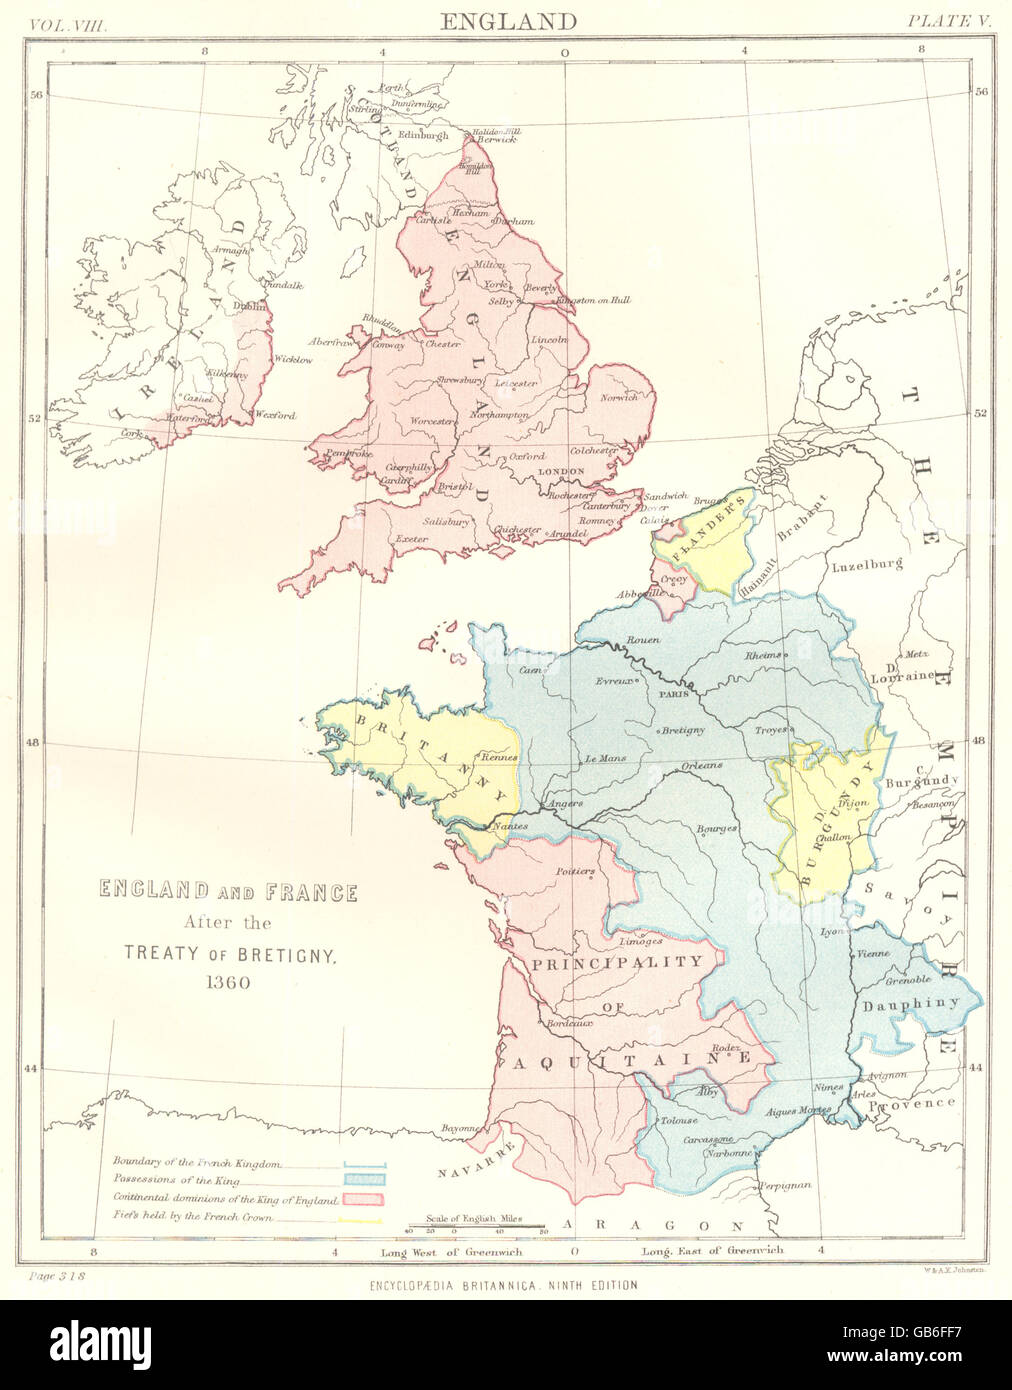 ENGLAND & Frankreich: nach dem Frieden von Bretigny 1360. Aquitaine Flandern 1898 Karte Stockfoto